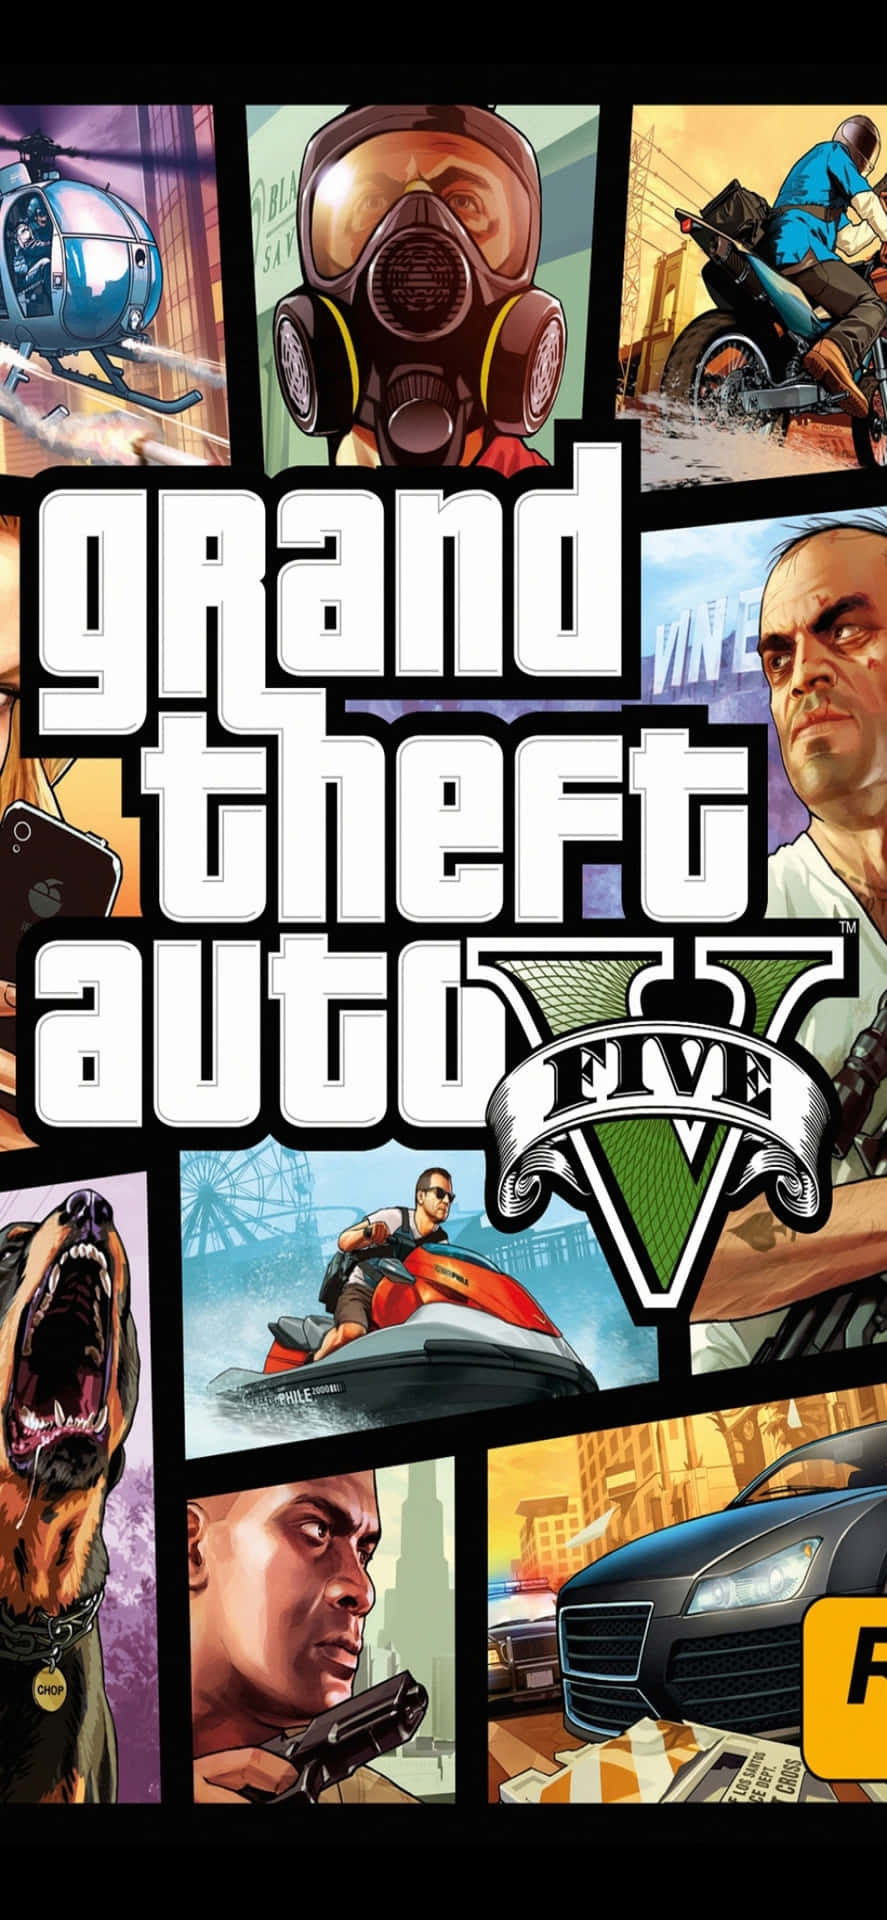 Iphonexs Max Bakgrundsbild Med Grand Theft Auto V Fotocollage Affisch.